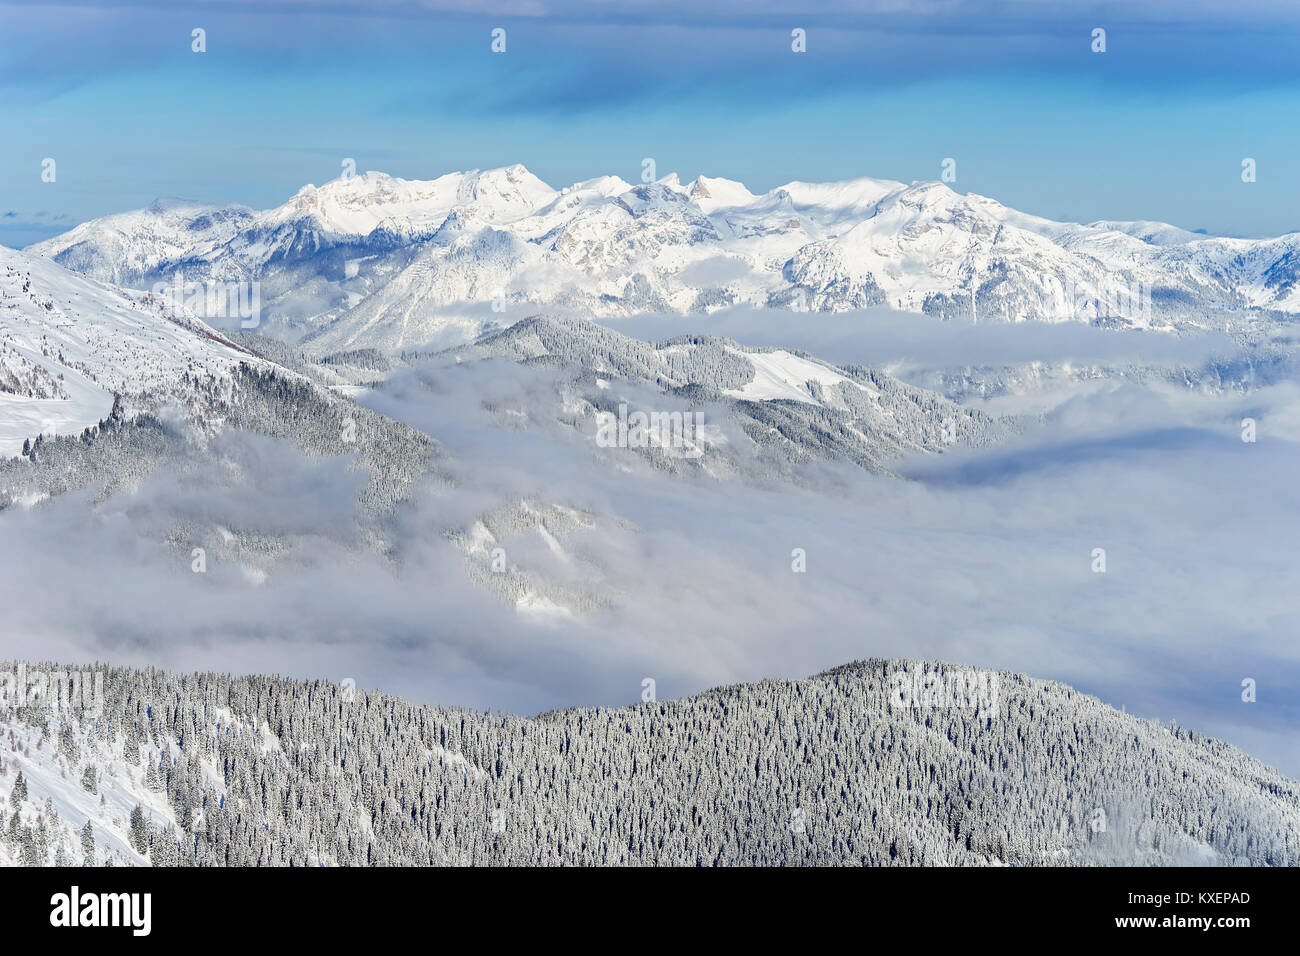 Mountain landscape,Rofan mountains with snow,Tyrol,Austria Stock Photo